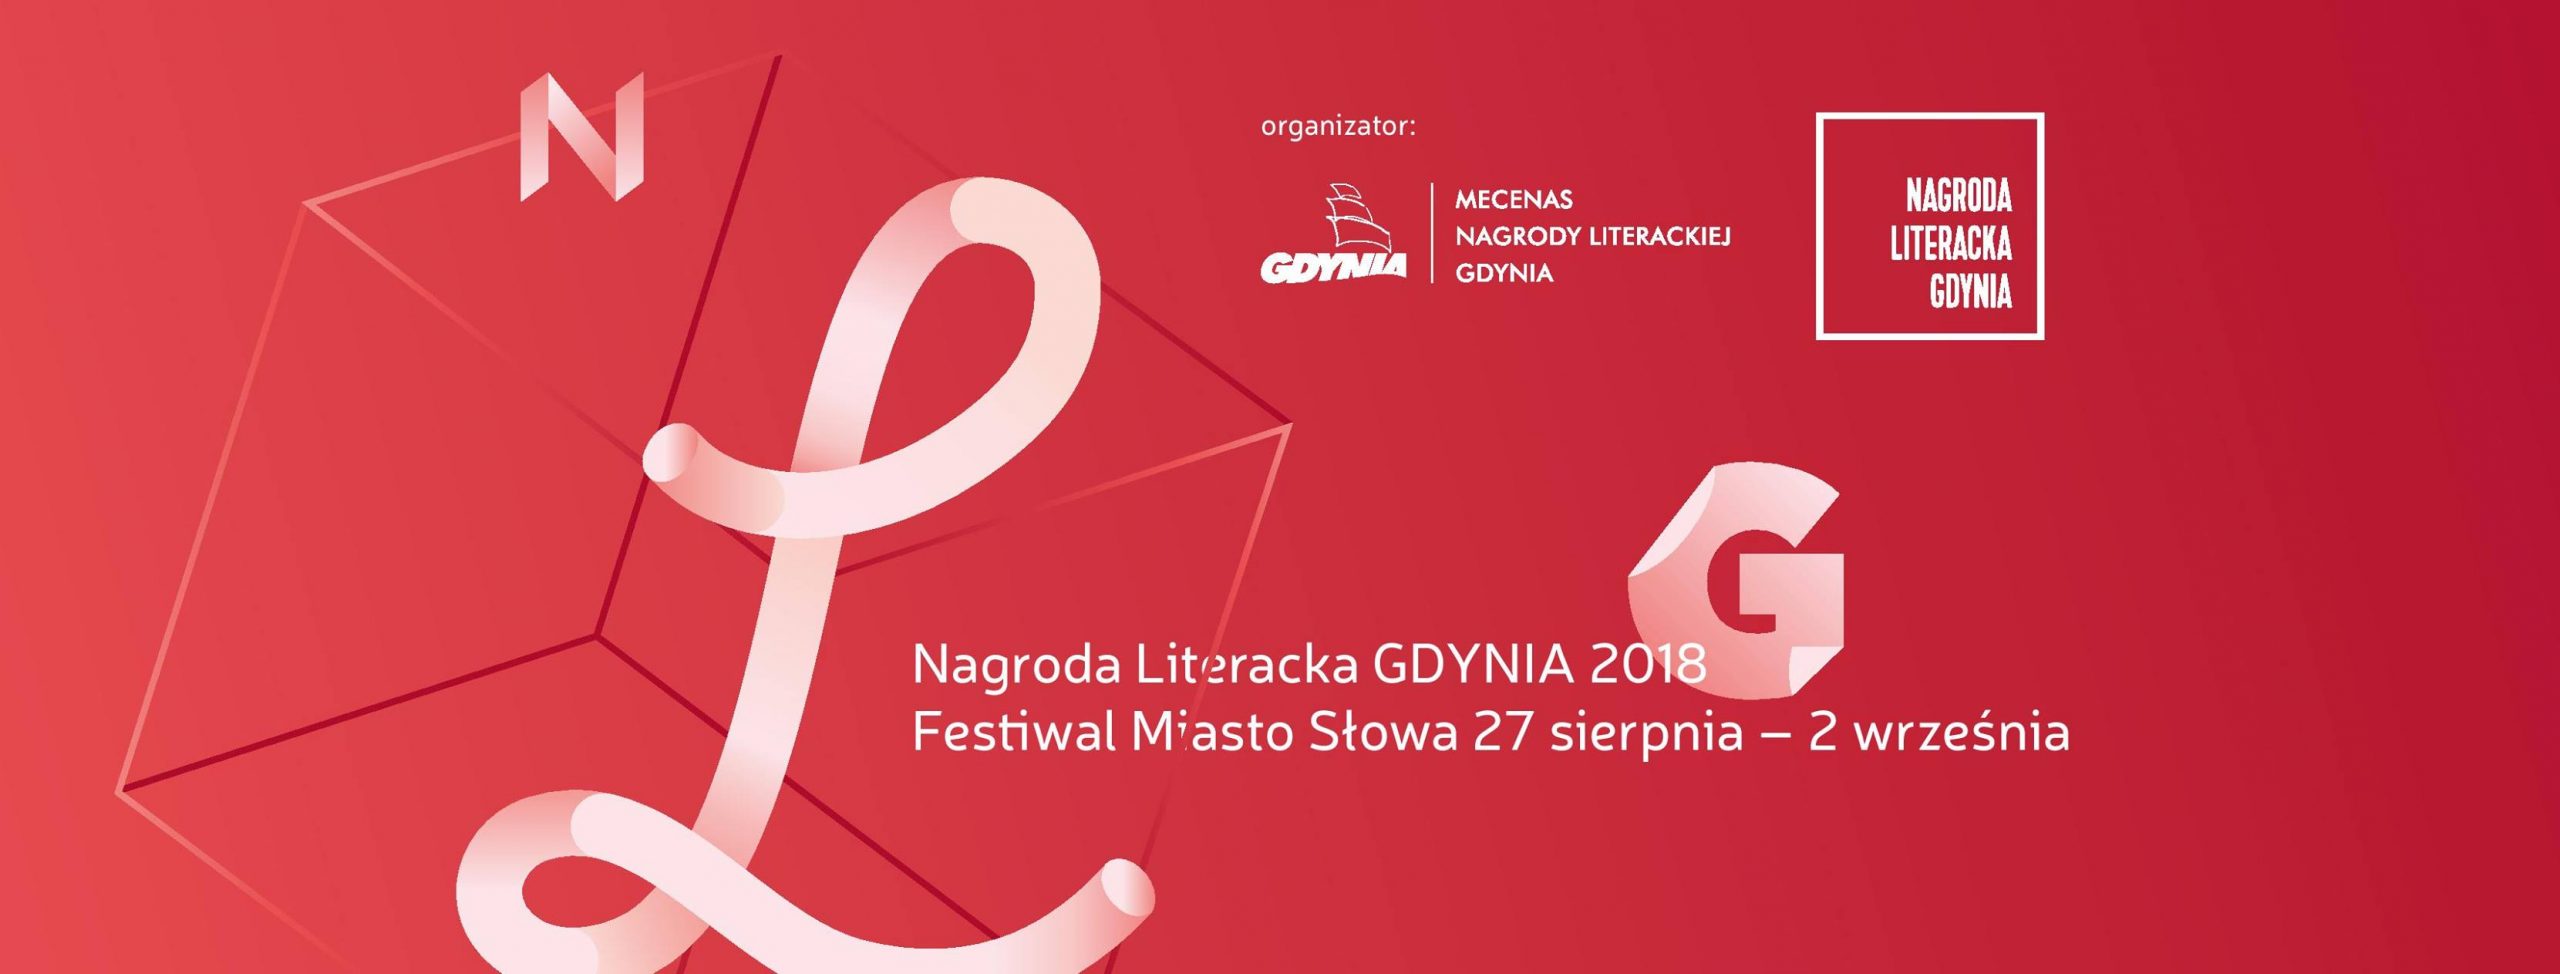 PROGRAM: Miasto Słowa / Nagroda Literacka GDYNIA 2018